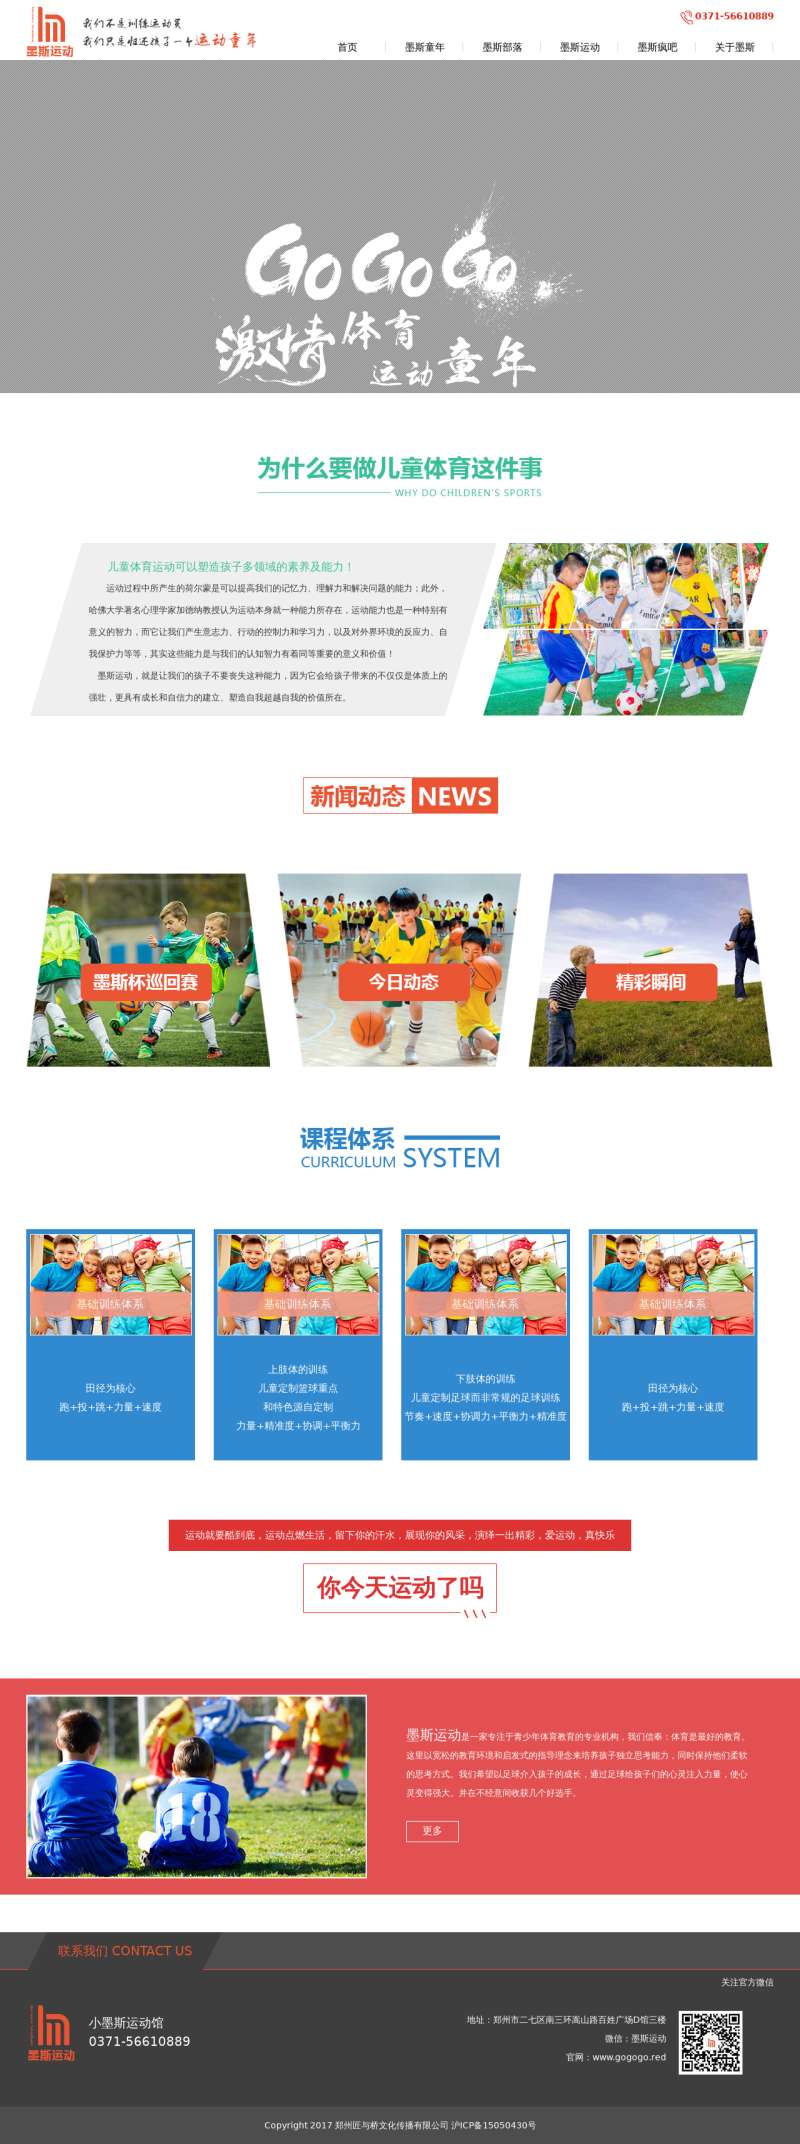 青少年体育教育网站模板